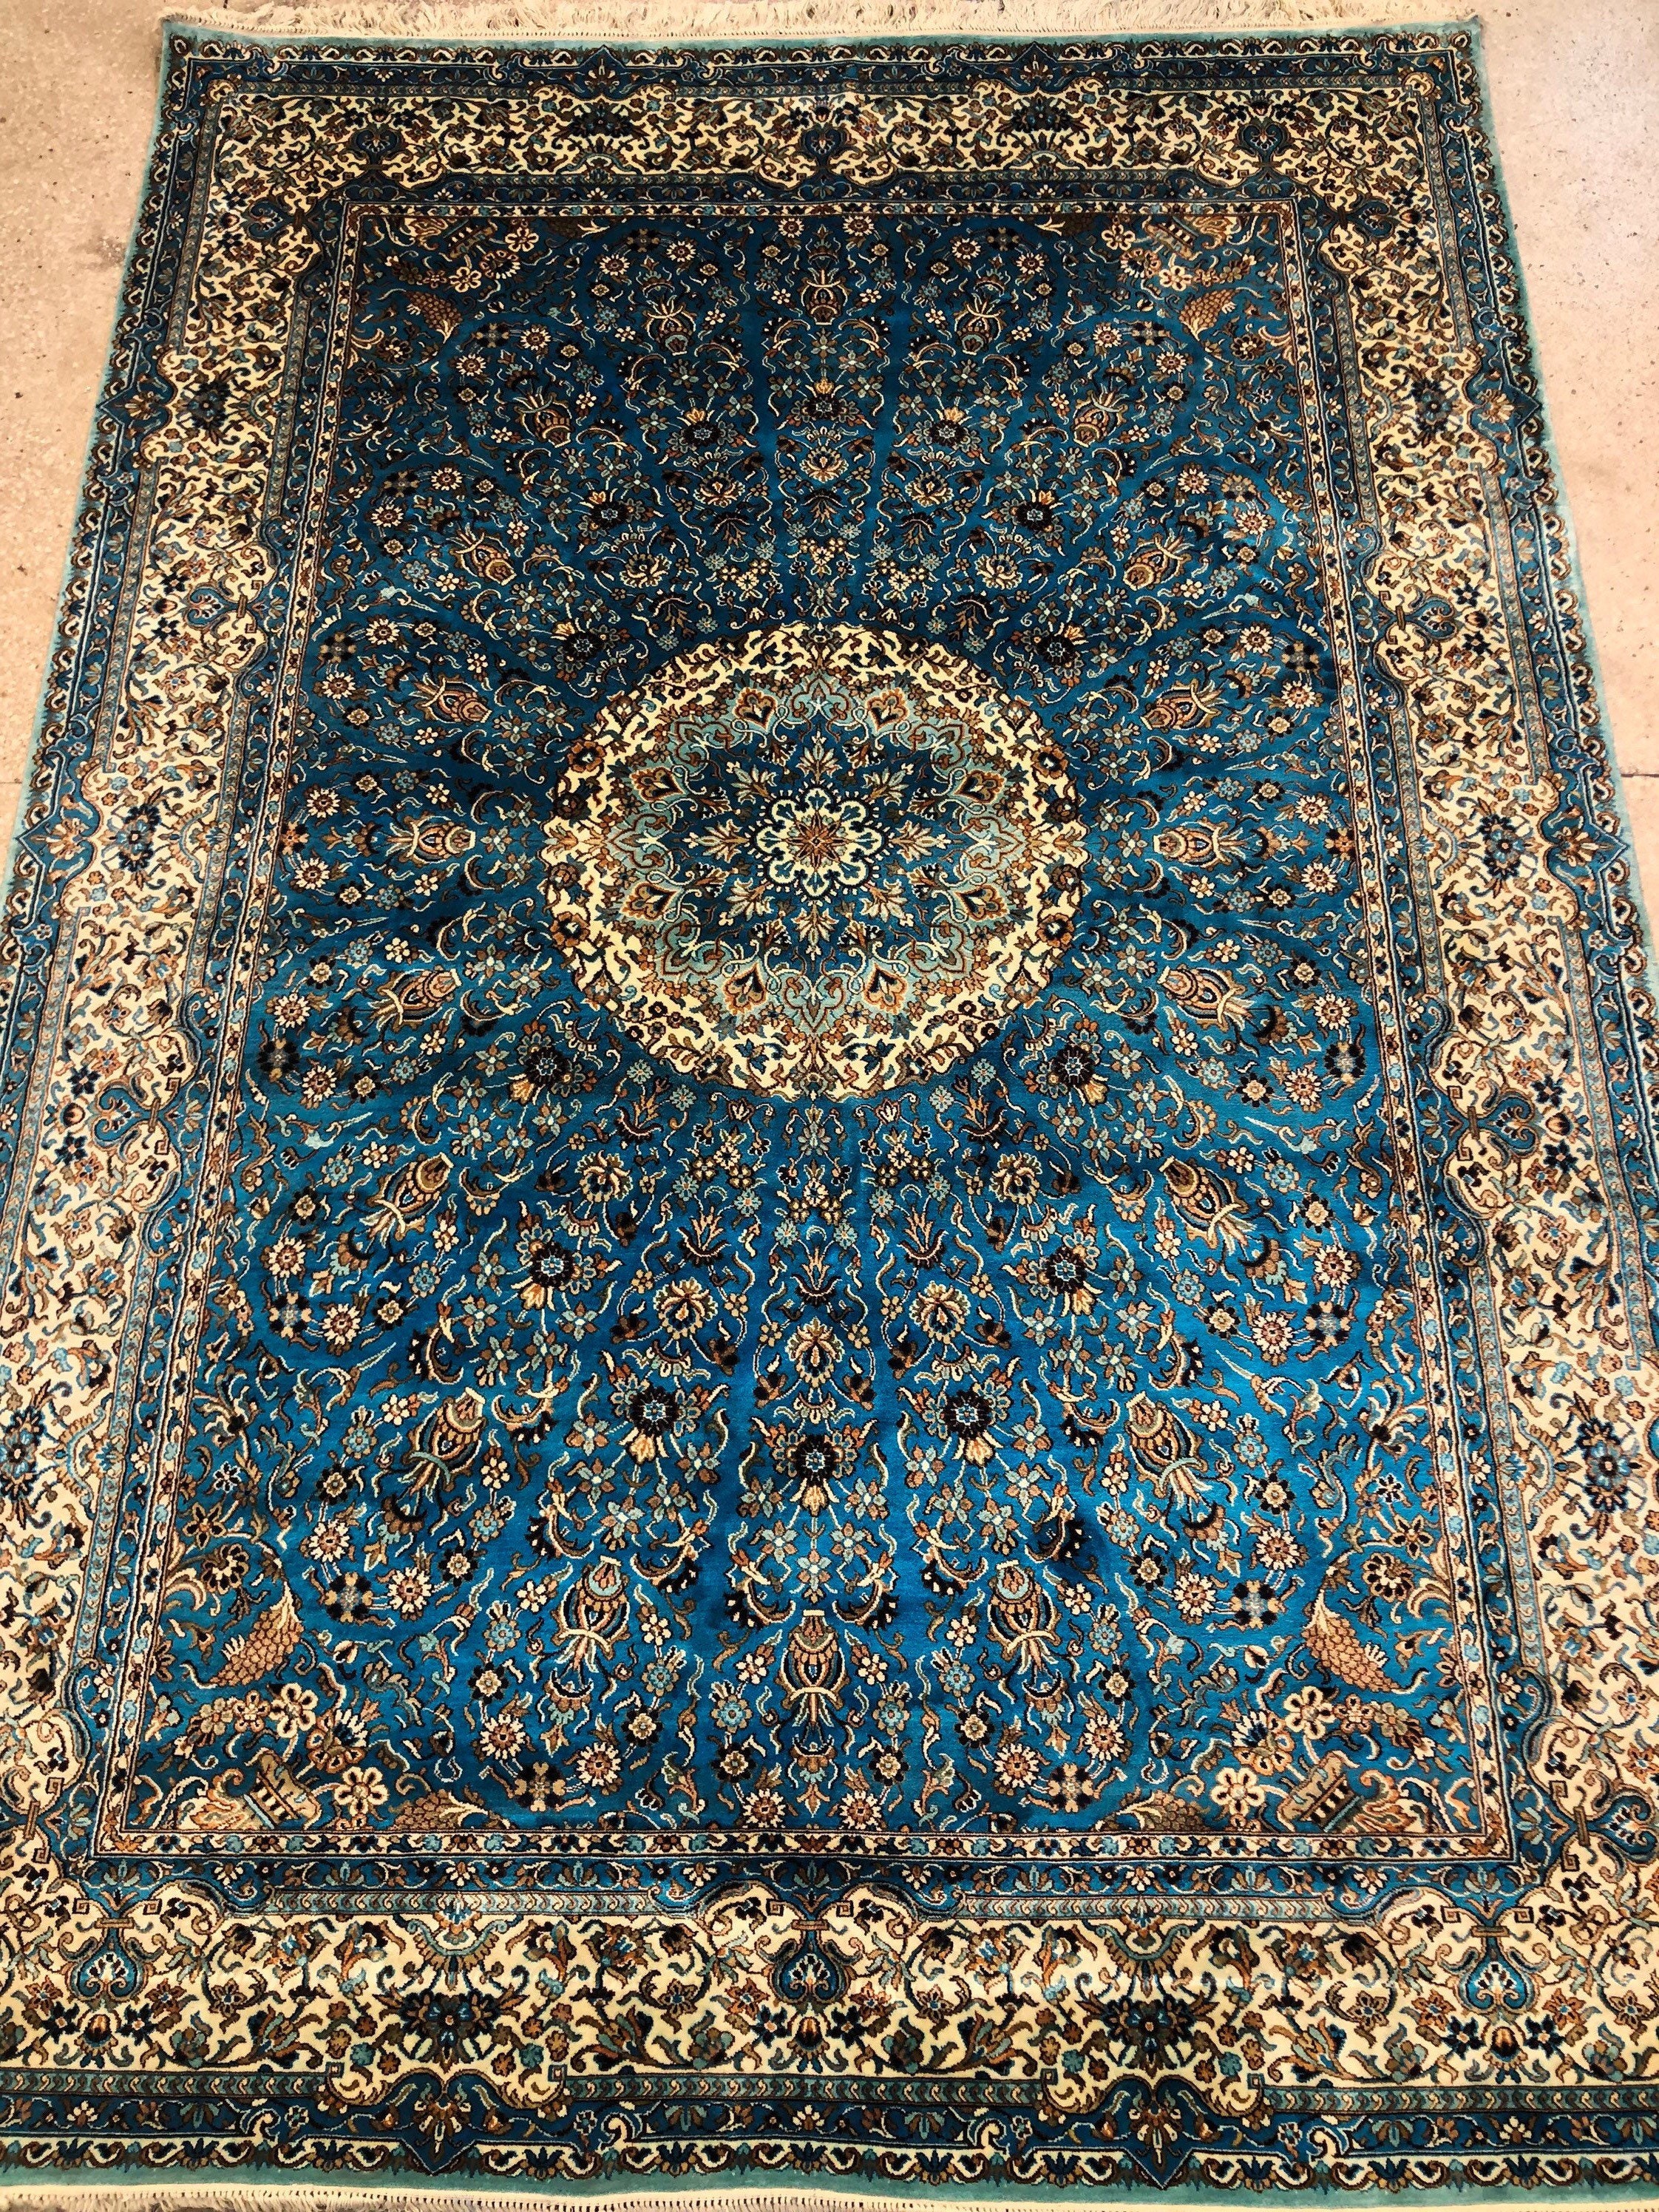 Size5x7 Feet Handmade Kashmir Silk Carpet